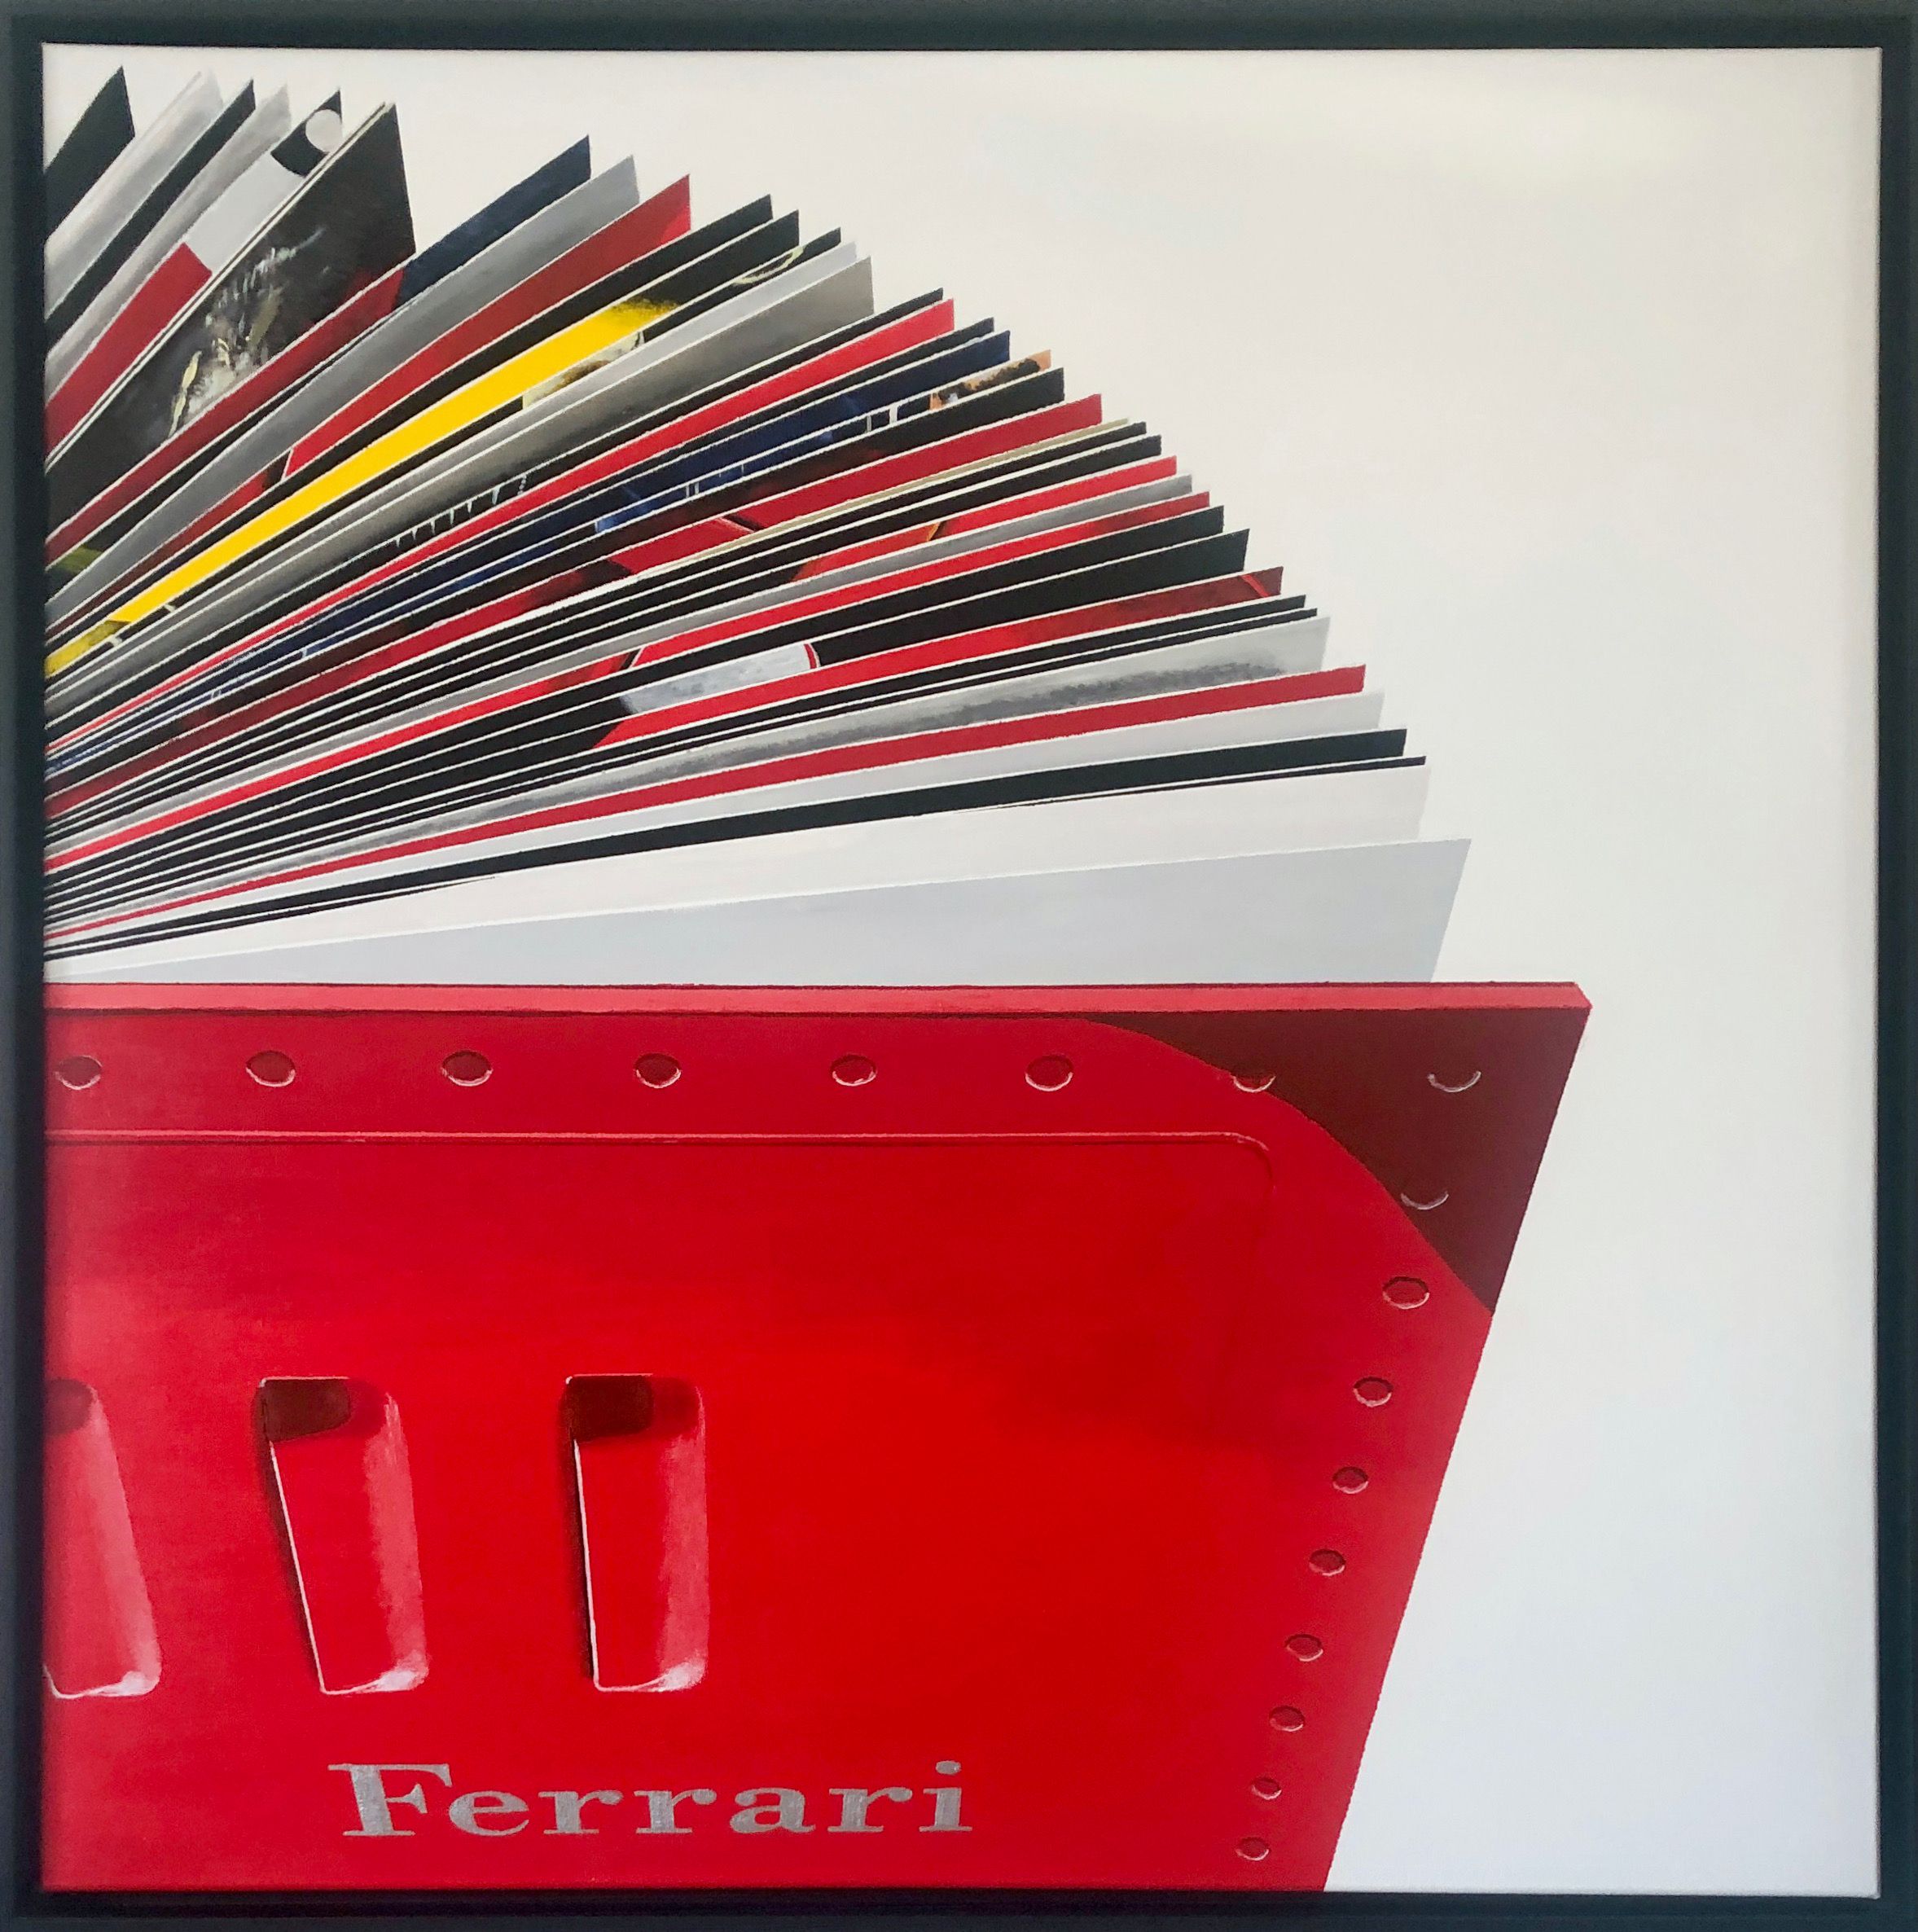 Rolf Gnauck "FERRARI" Detallada pintura en color de gran formato de un libro abierto